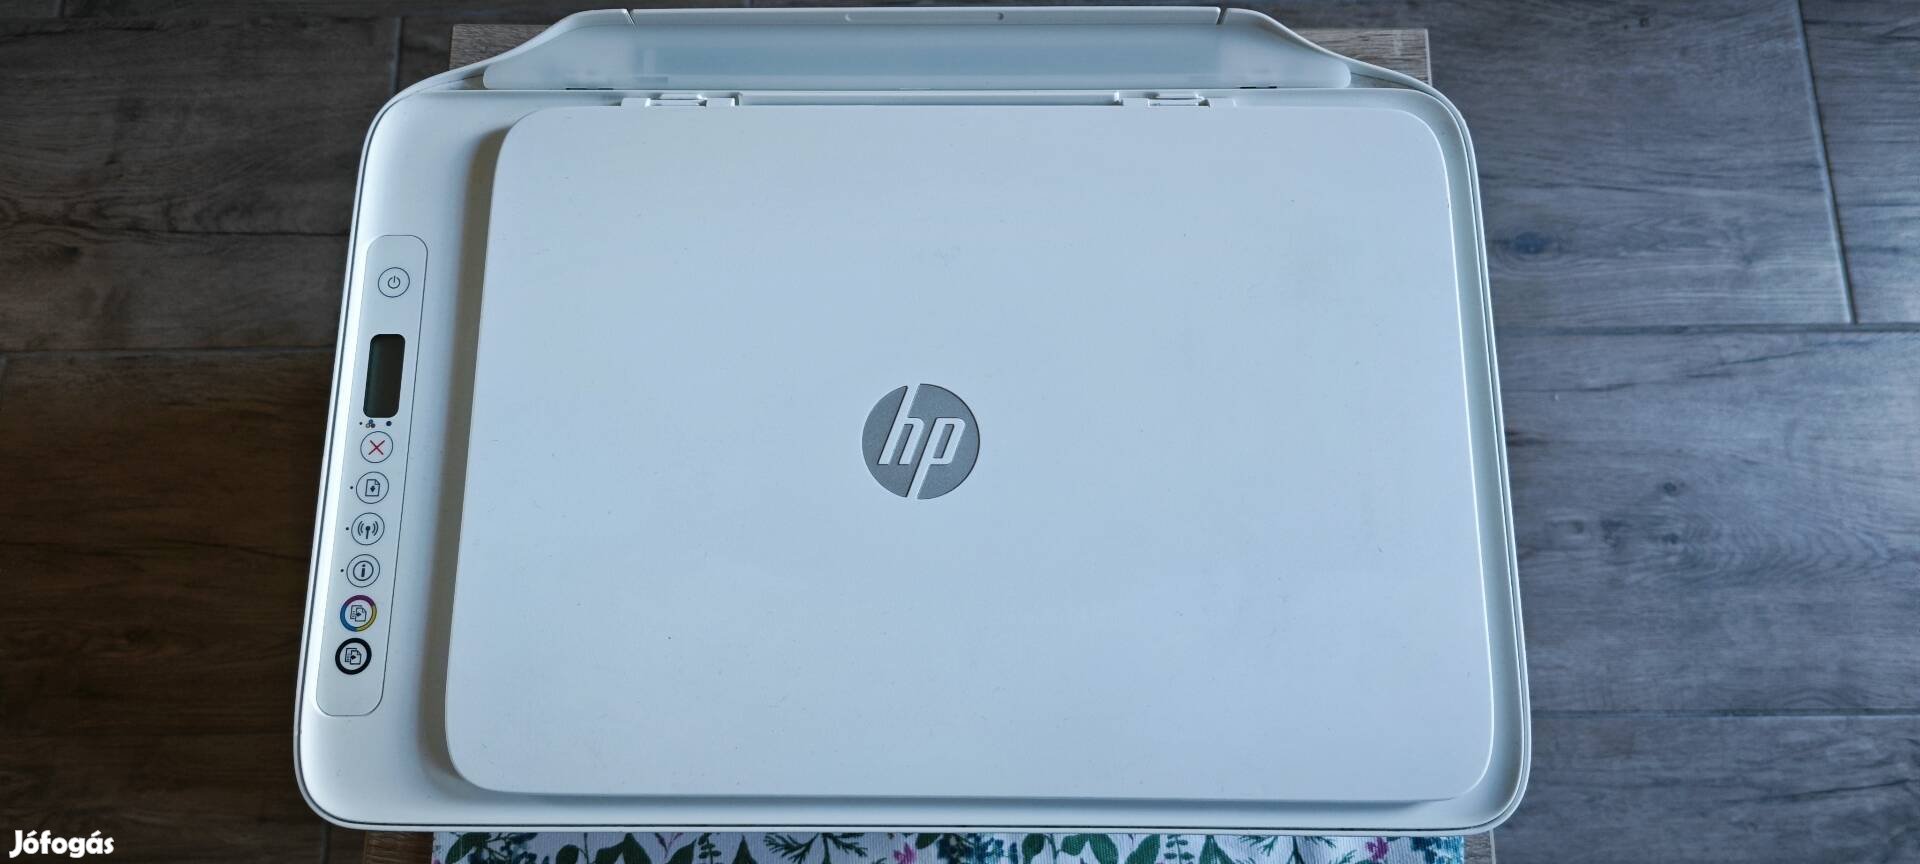 HP színes, multifunkcionális tintasugaras nyomtató ajándék tonerrel